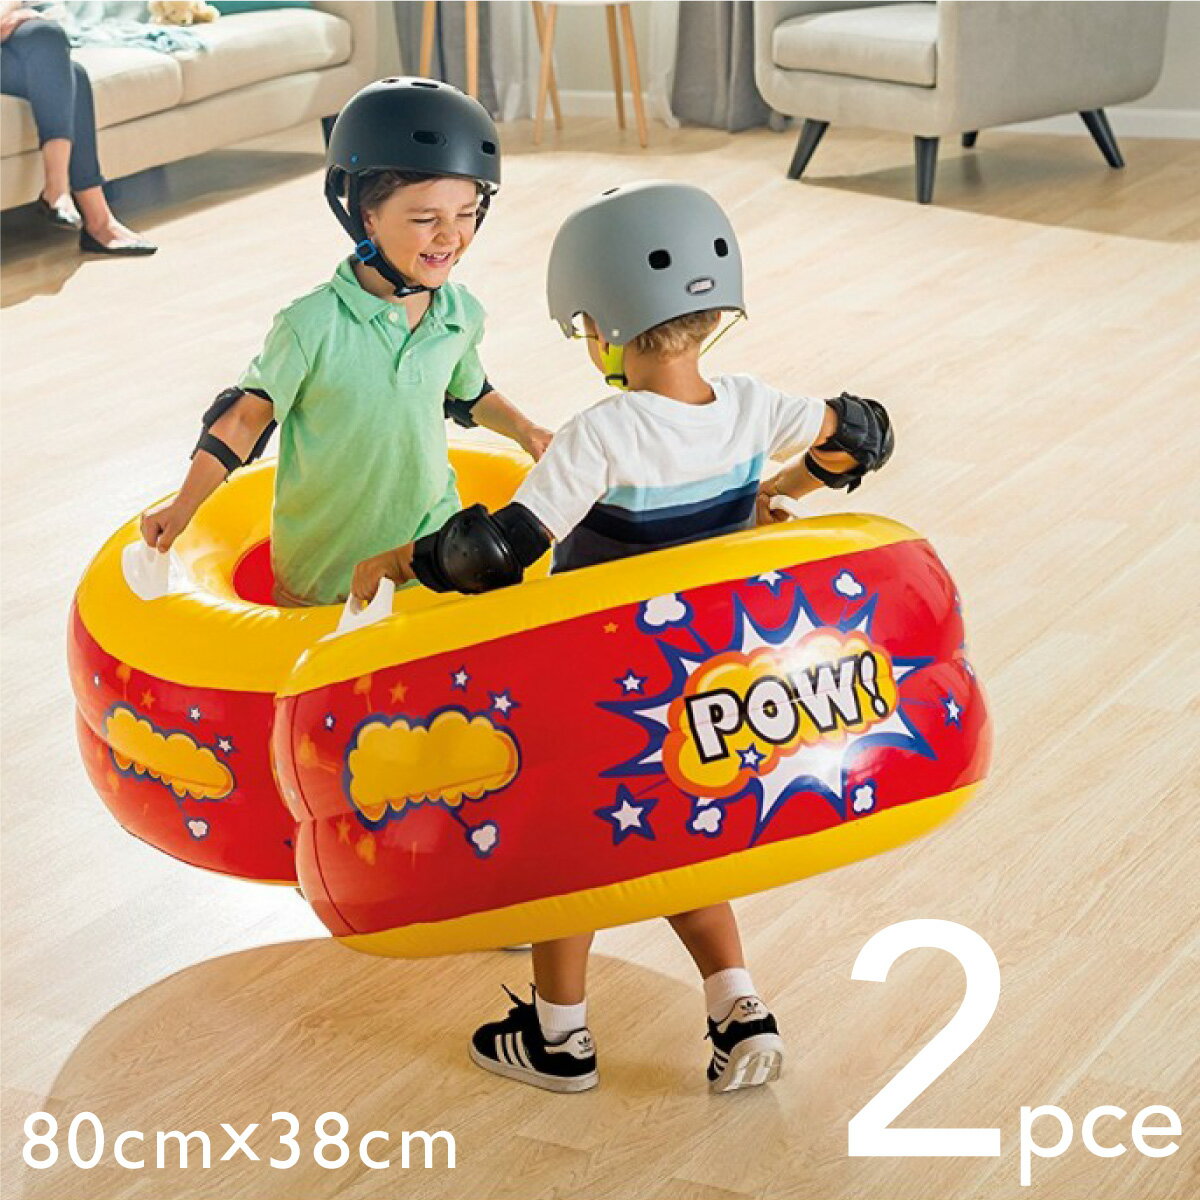 おもちゃ 子供 室内 intex キッズ エアーバンパー 80cm×38c 2個セット | スポーツトイ 室内遊び 室内玩具 バンパー カーポー 対戦 対決 男の子 女の子 幼児 遊び 遊ぶ